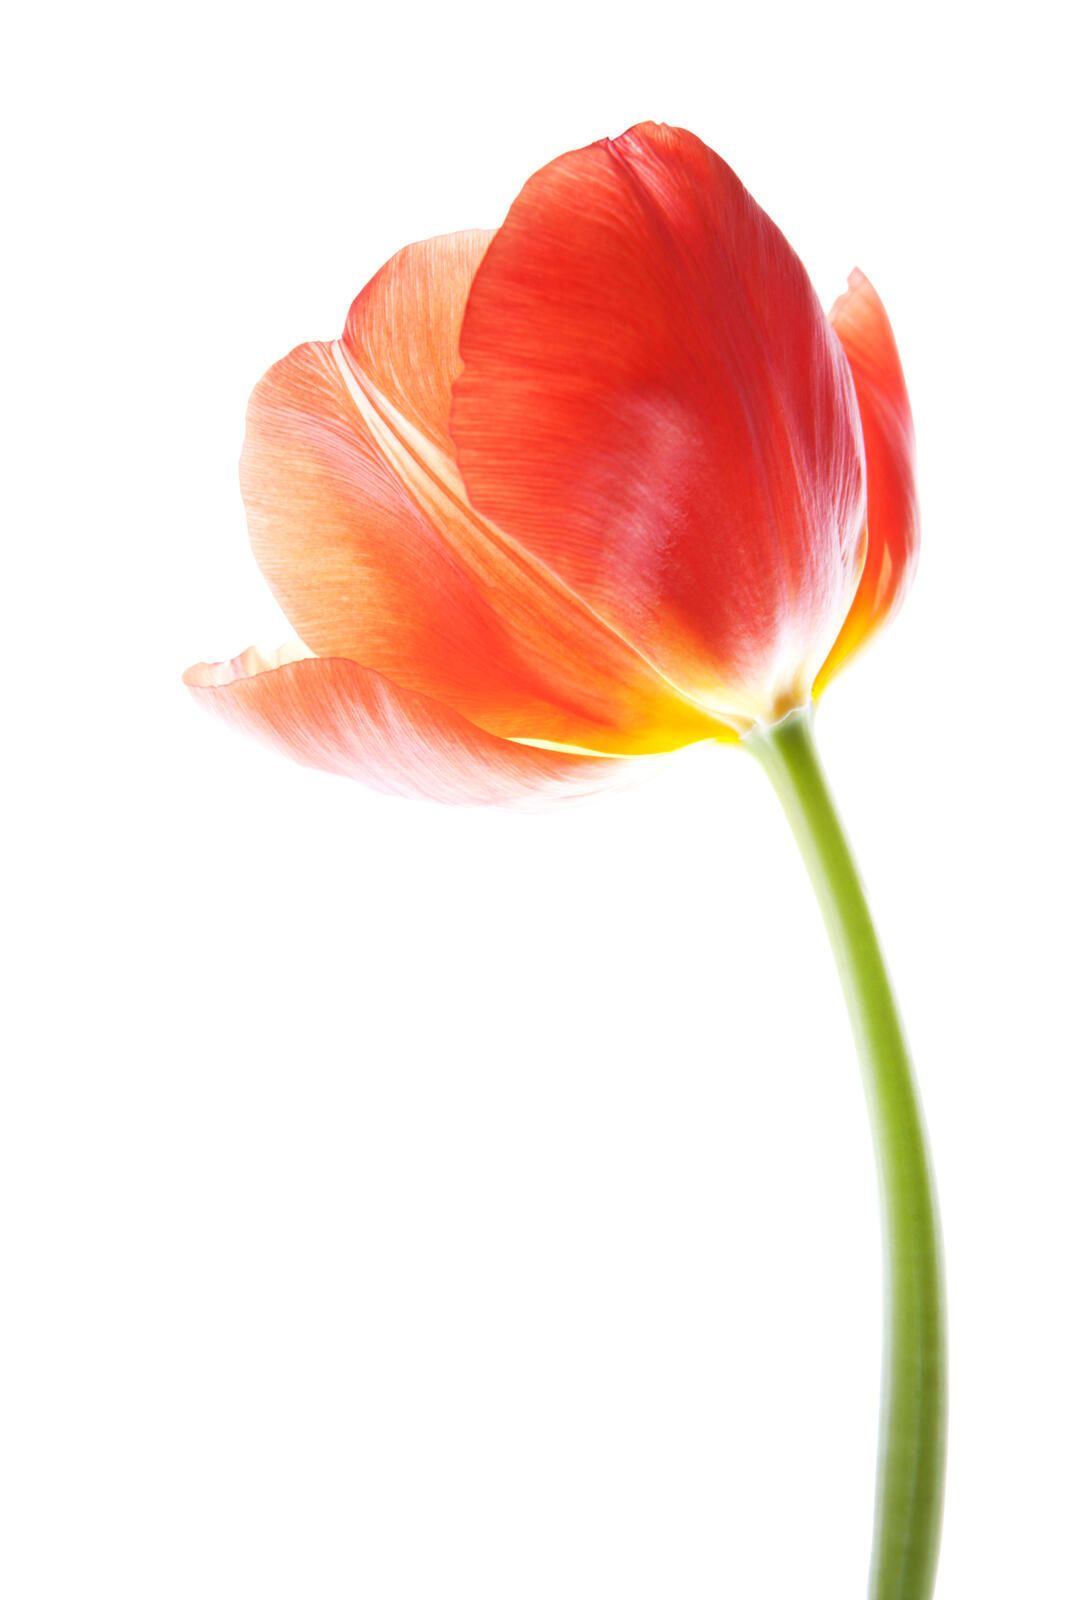 Savjeti za njegu cvijeća tulipana